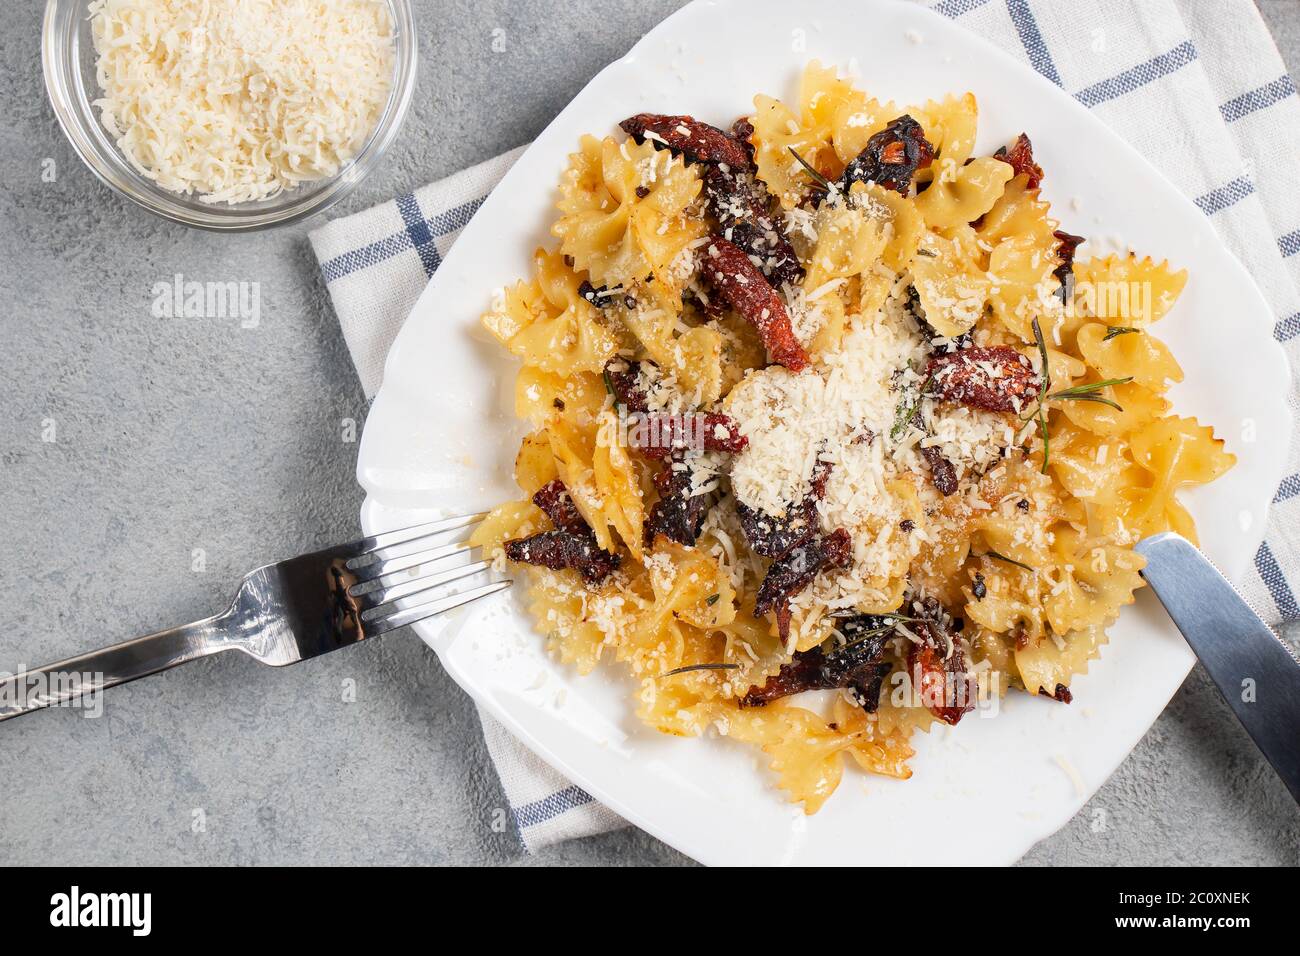 Pâtes avec tomates séchées et parmesan dans une assiette blanche sur la table. Plats italiens, vue de dessus, plat Banque D'Images